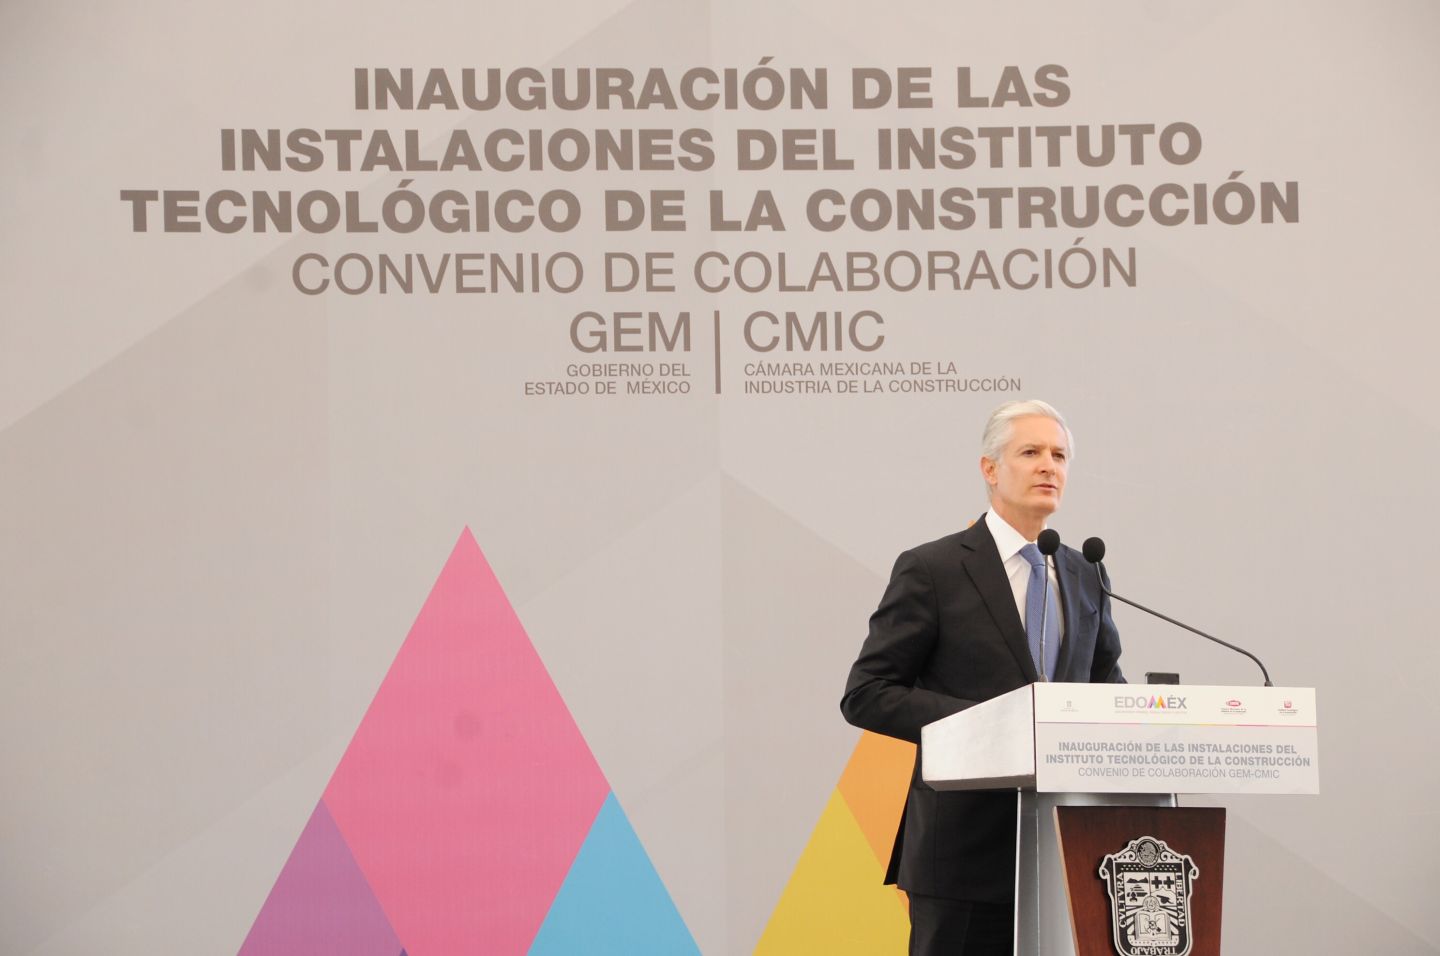  El Gobernador Alfredo Del Mazo Maza informó que el Gobierno del Estado de México respalda el proyecto de la Guardia Nacional 